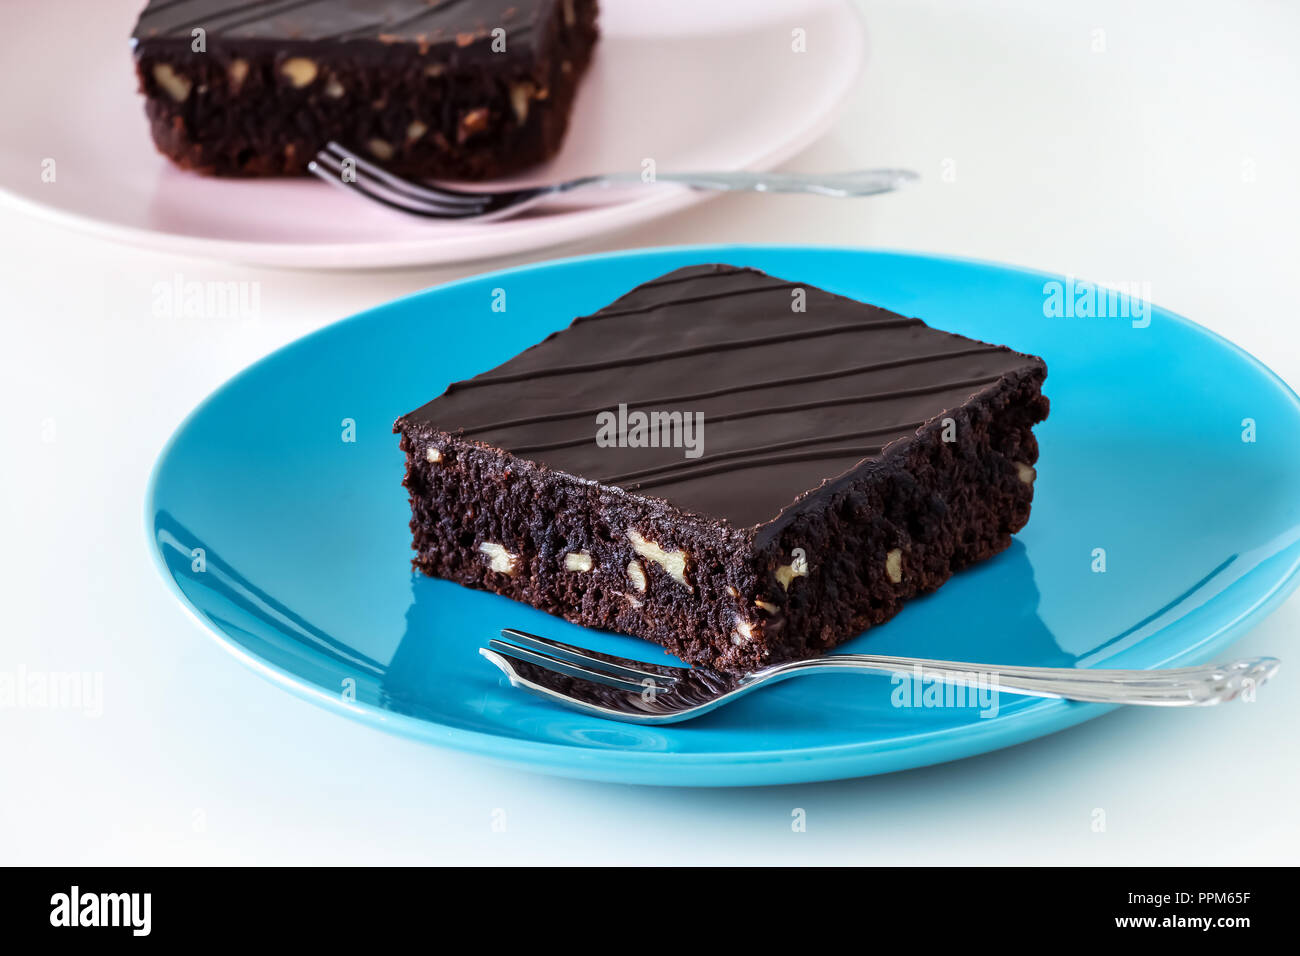 Dunkle Schokolade veganer Schokoladenkuchen Kuchen mit Muttern blau und rosa Platte weißen Hintergrund. Selektive konzentrieren. Stockfoto